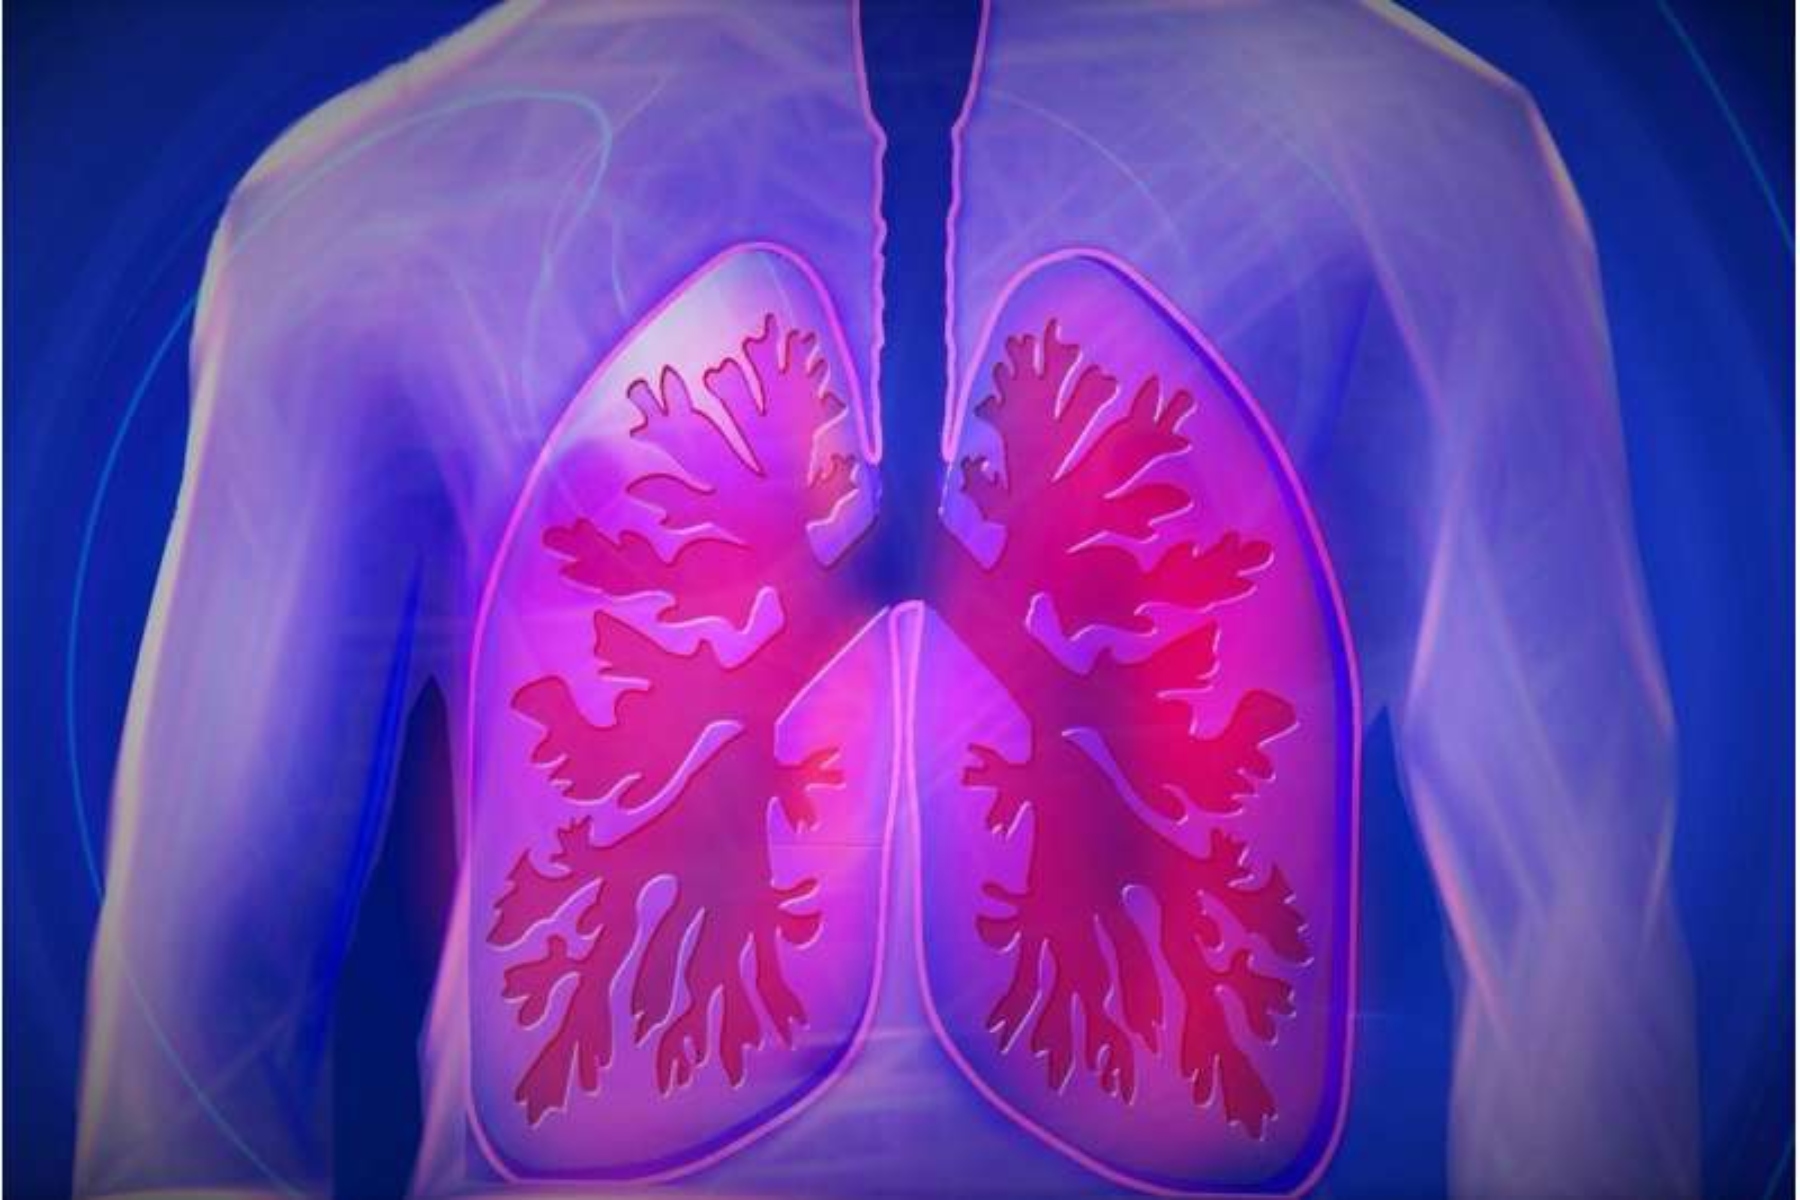 Πνεύμονες μικροβίωμα: Καθορίζουν την μεταμόσχευση μυελού των οστών στα παιδιά